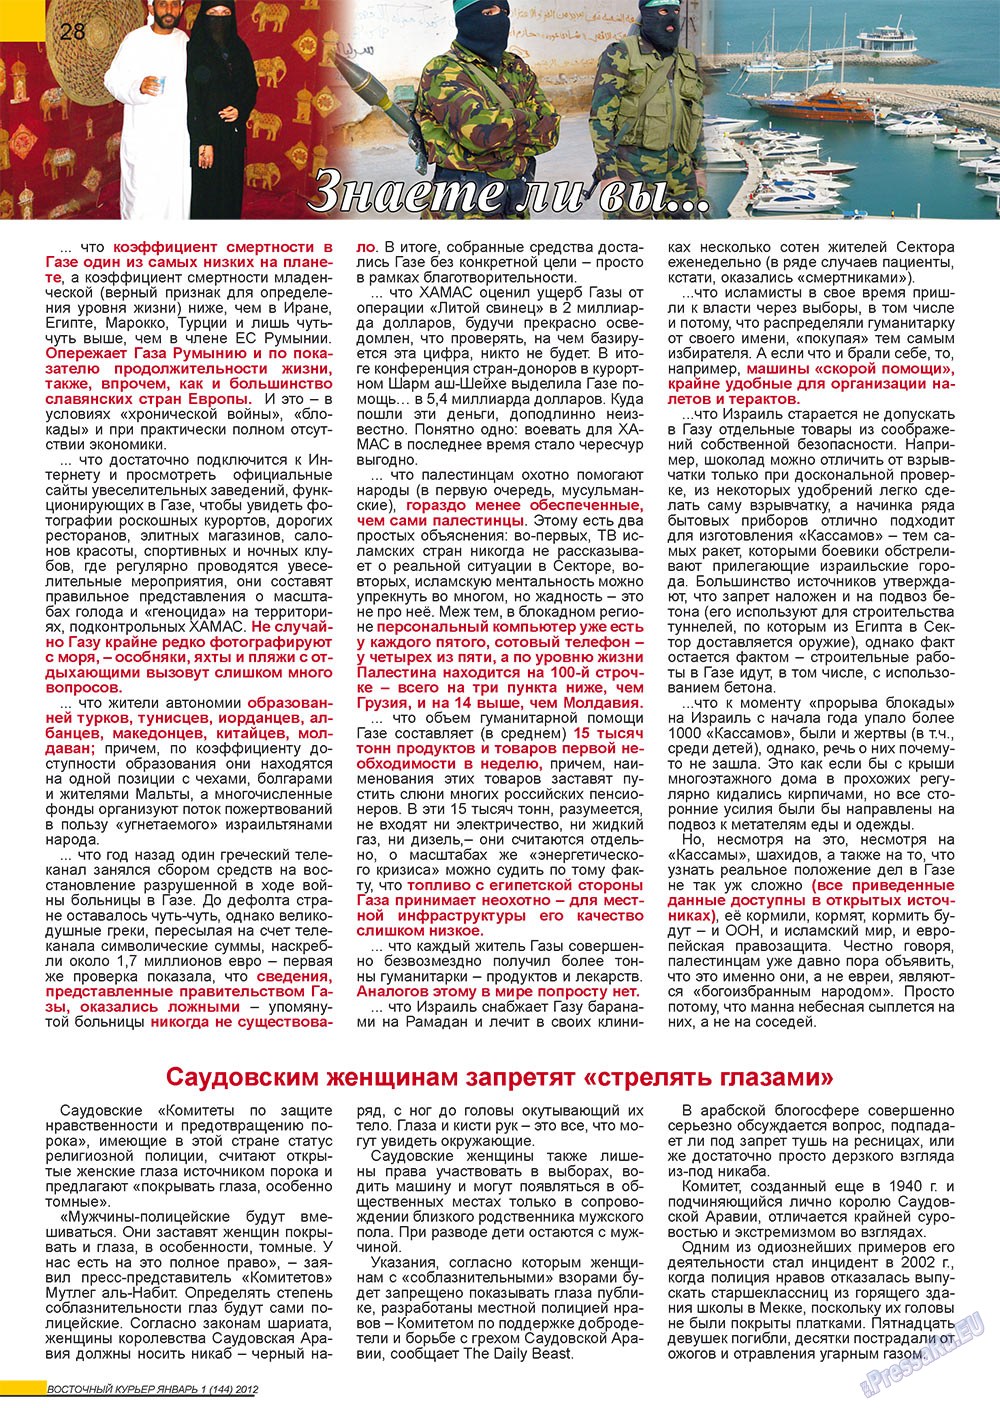 Восточный курьер (журнал). 2012 год, номер 1, стр. 28